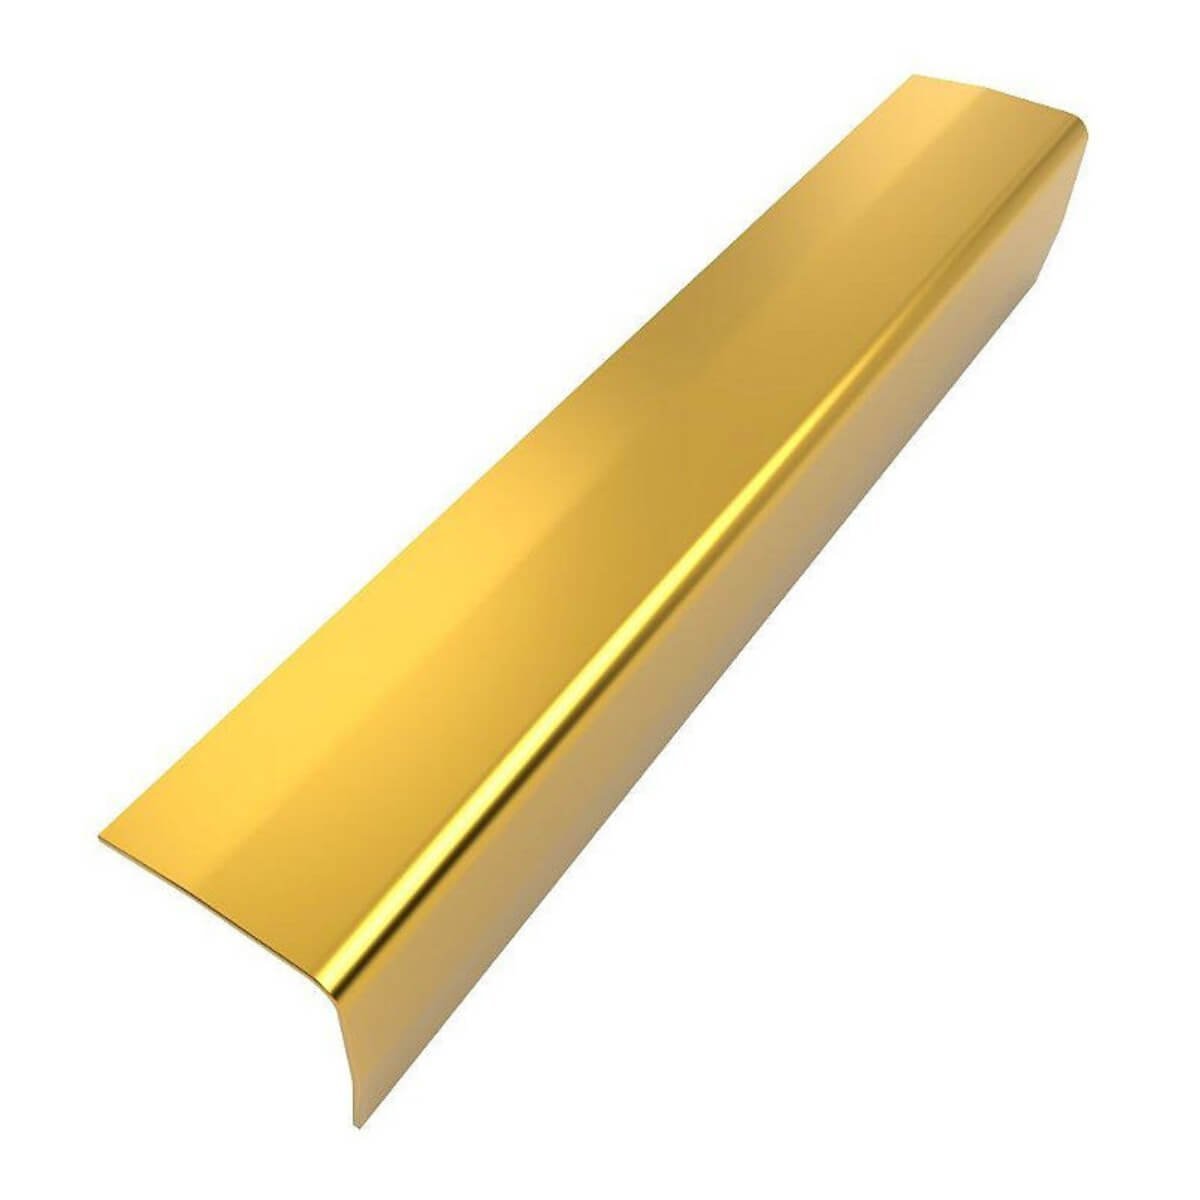 Perfil Cantoneira de Aço Inox 304 - Brilho, Dourado  - 11 x 11 x 2000 mm